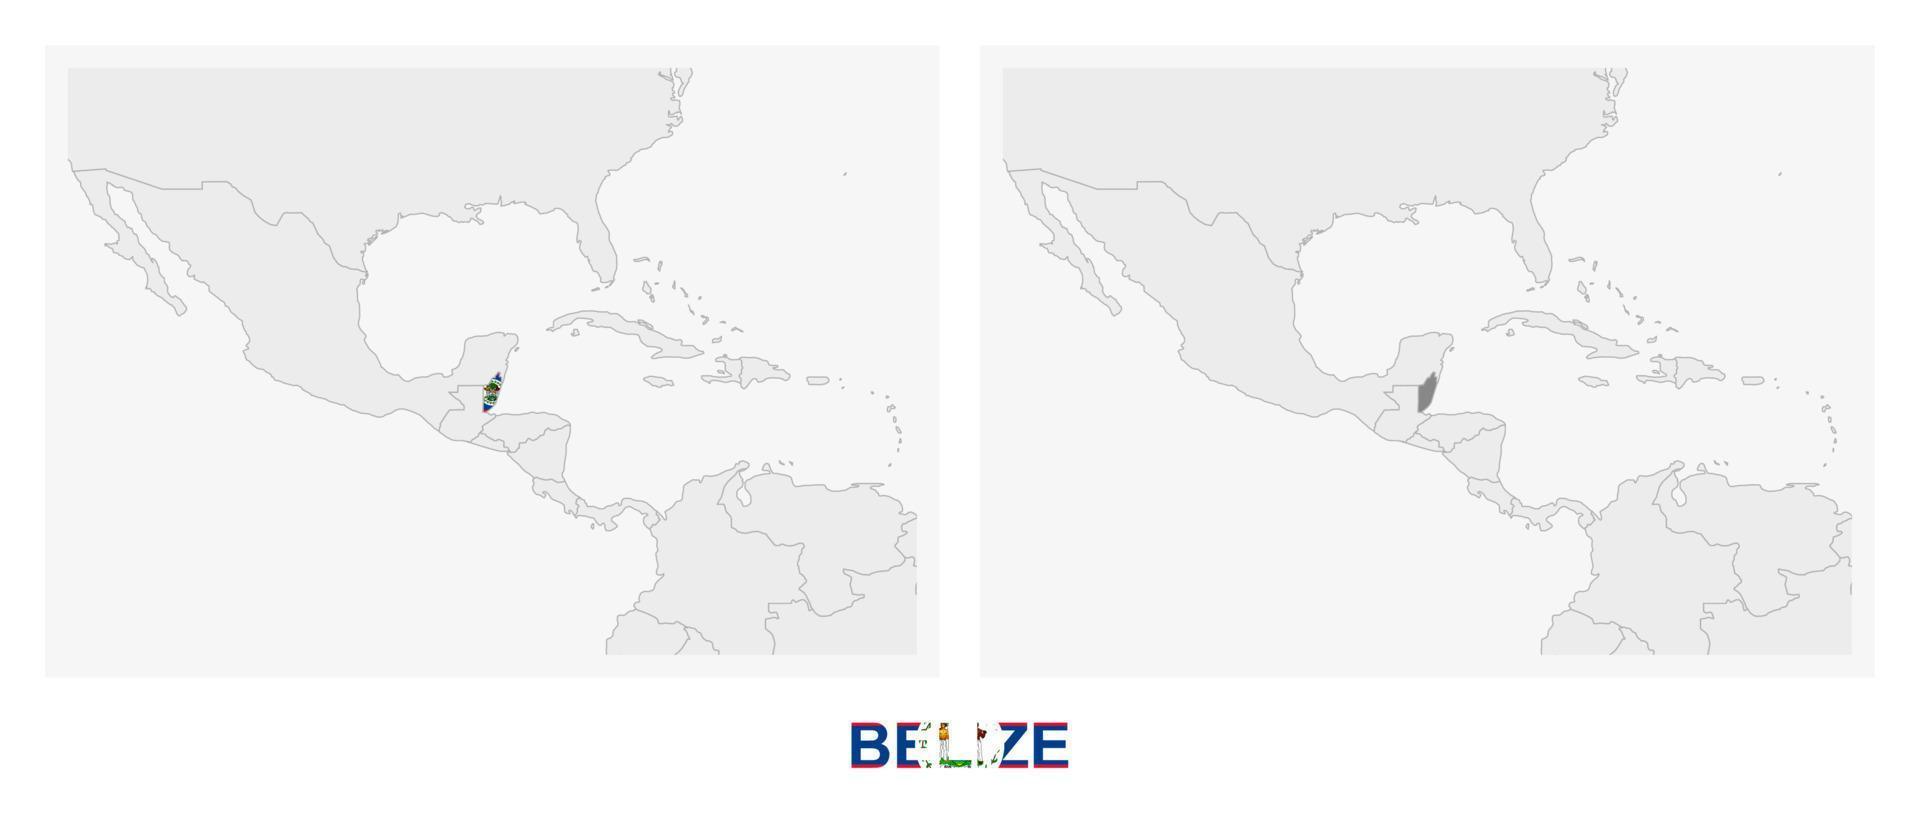 zwei versionen der karte von belize, mit der flagge von belize und dunkelgrau hervorgehoben. vektor